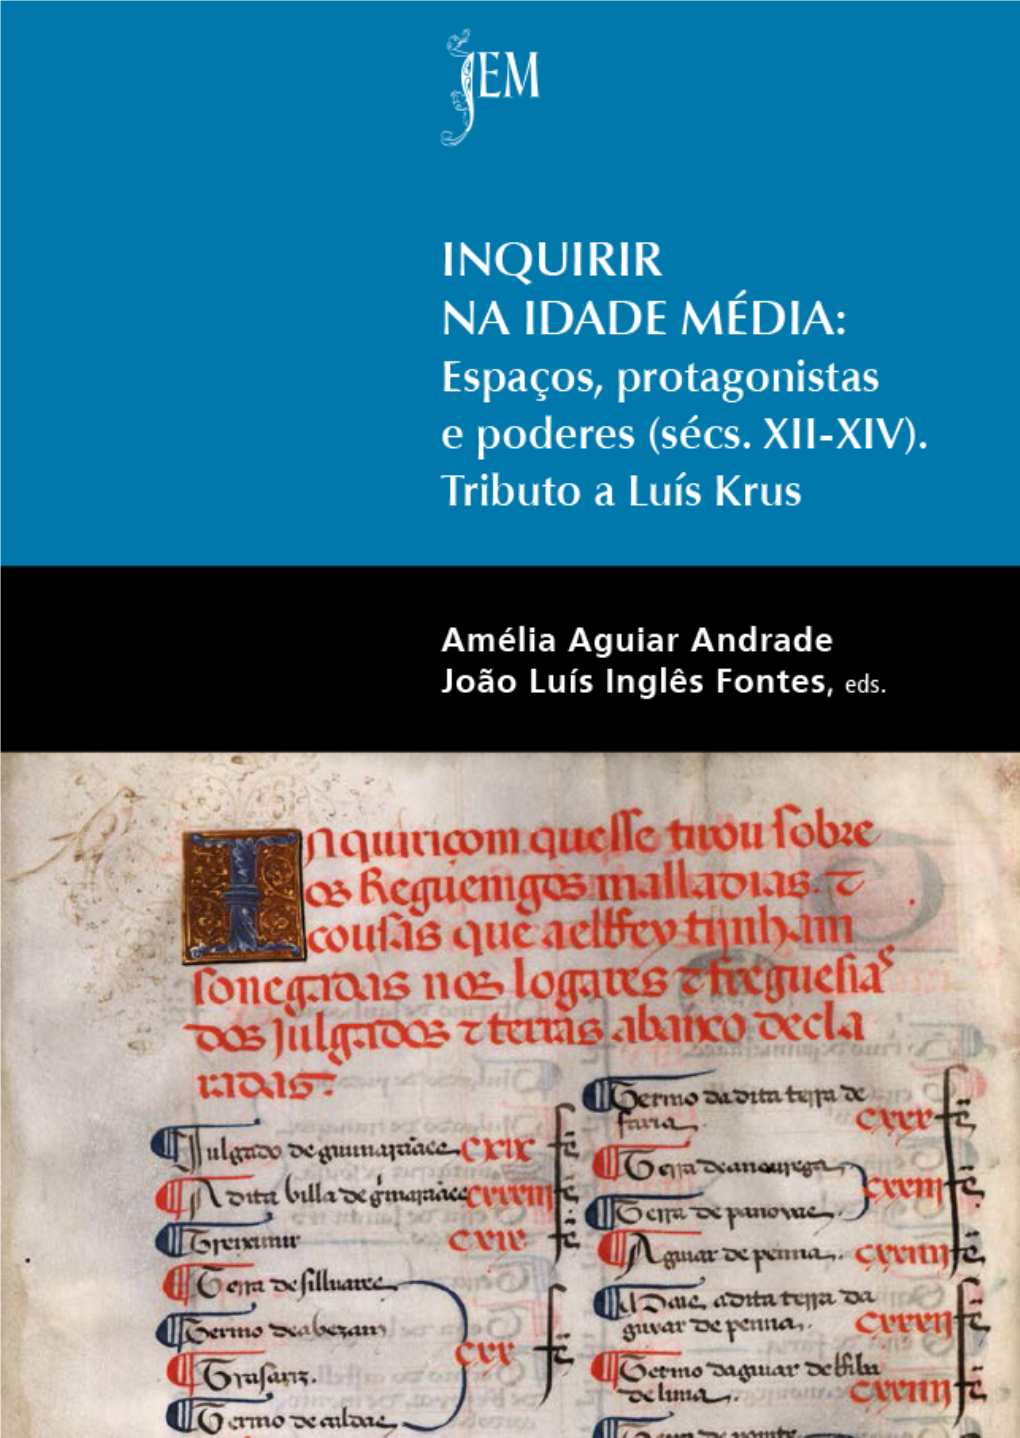 Inquirir Na Idade Média: Espaços, Protagonistas E Poderes (Séculos XII-XIV) – Tributo a Luís Krus